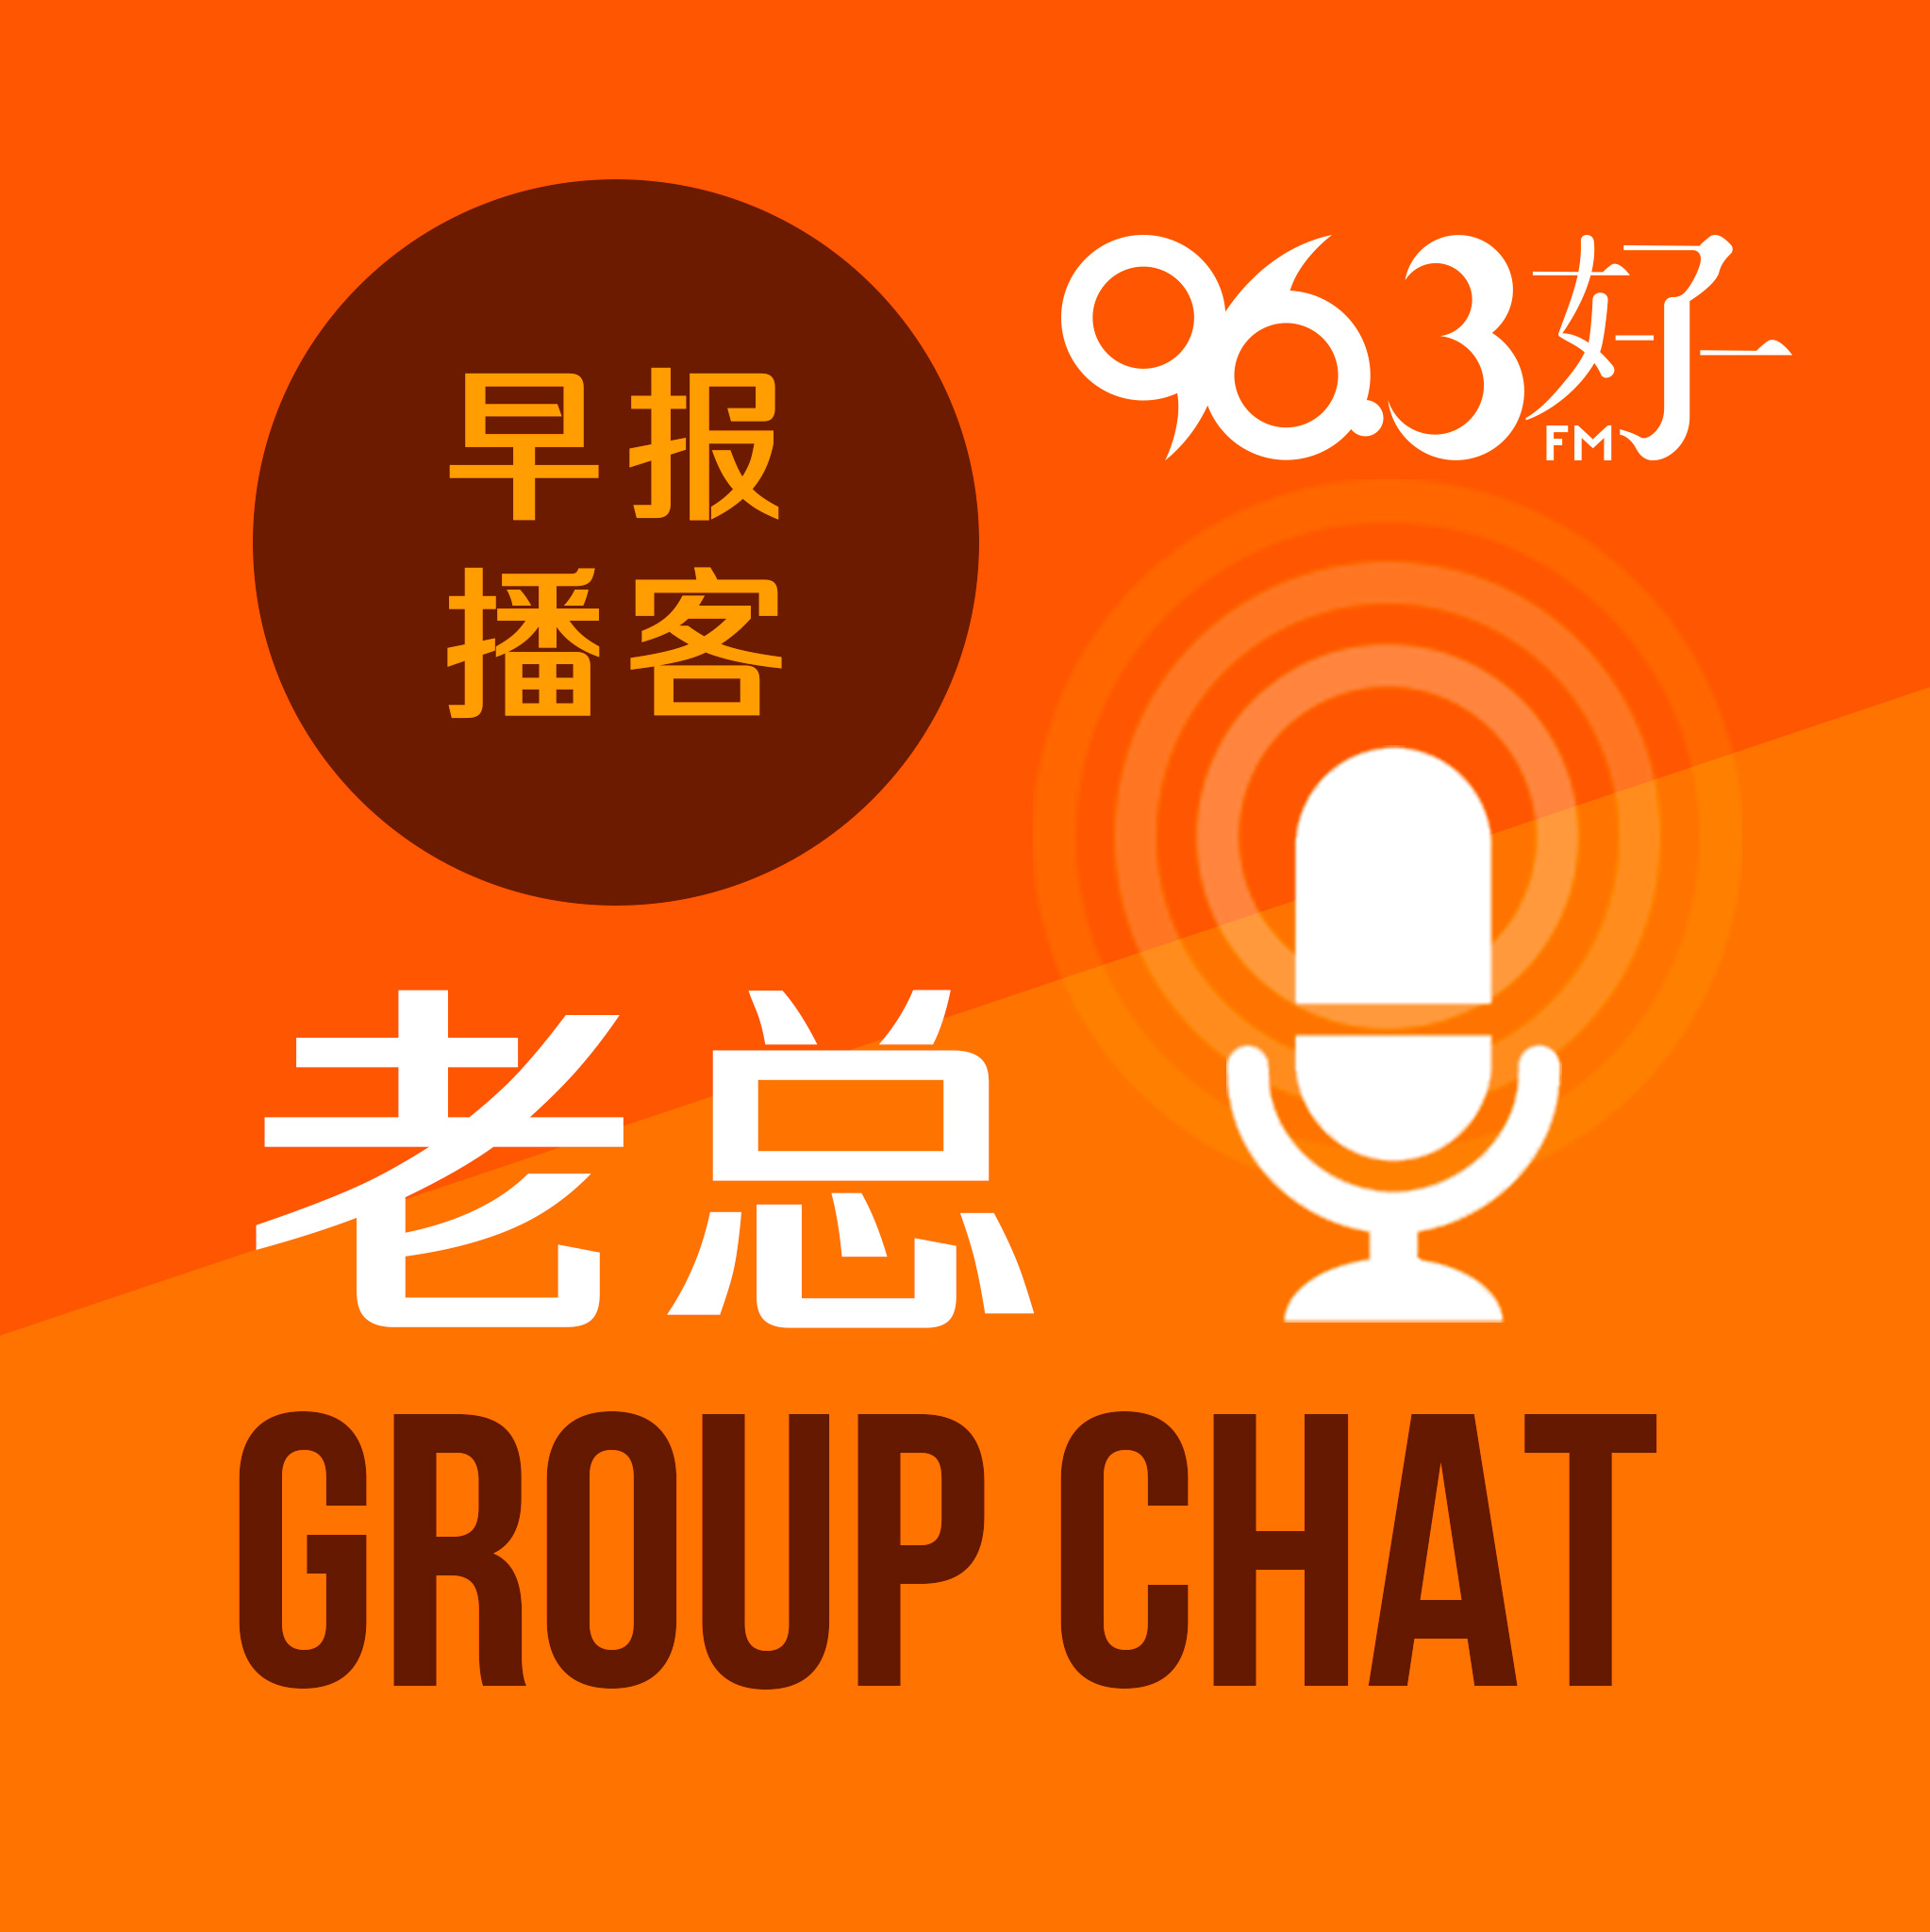 8月7日《老总 Group Chat》：47雇主涉违反公平雇佣